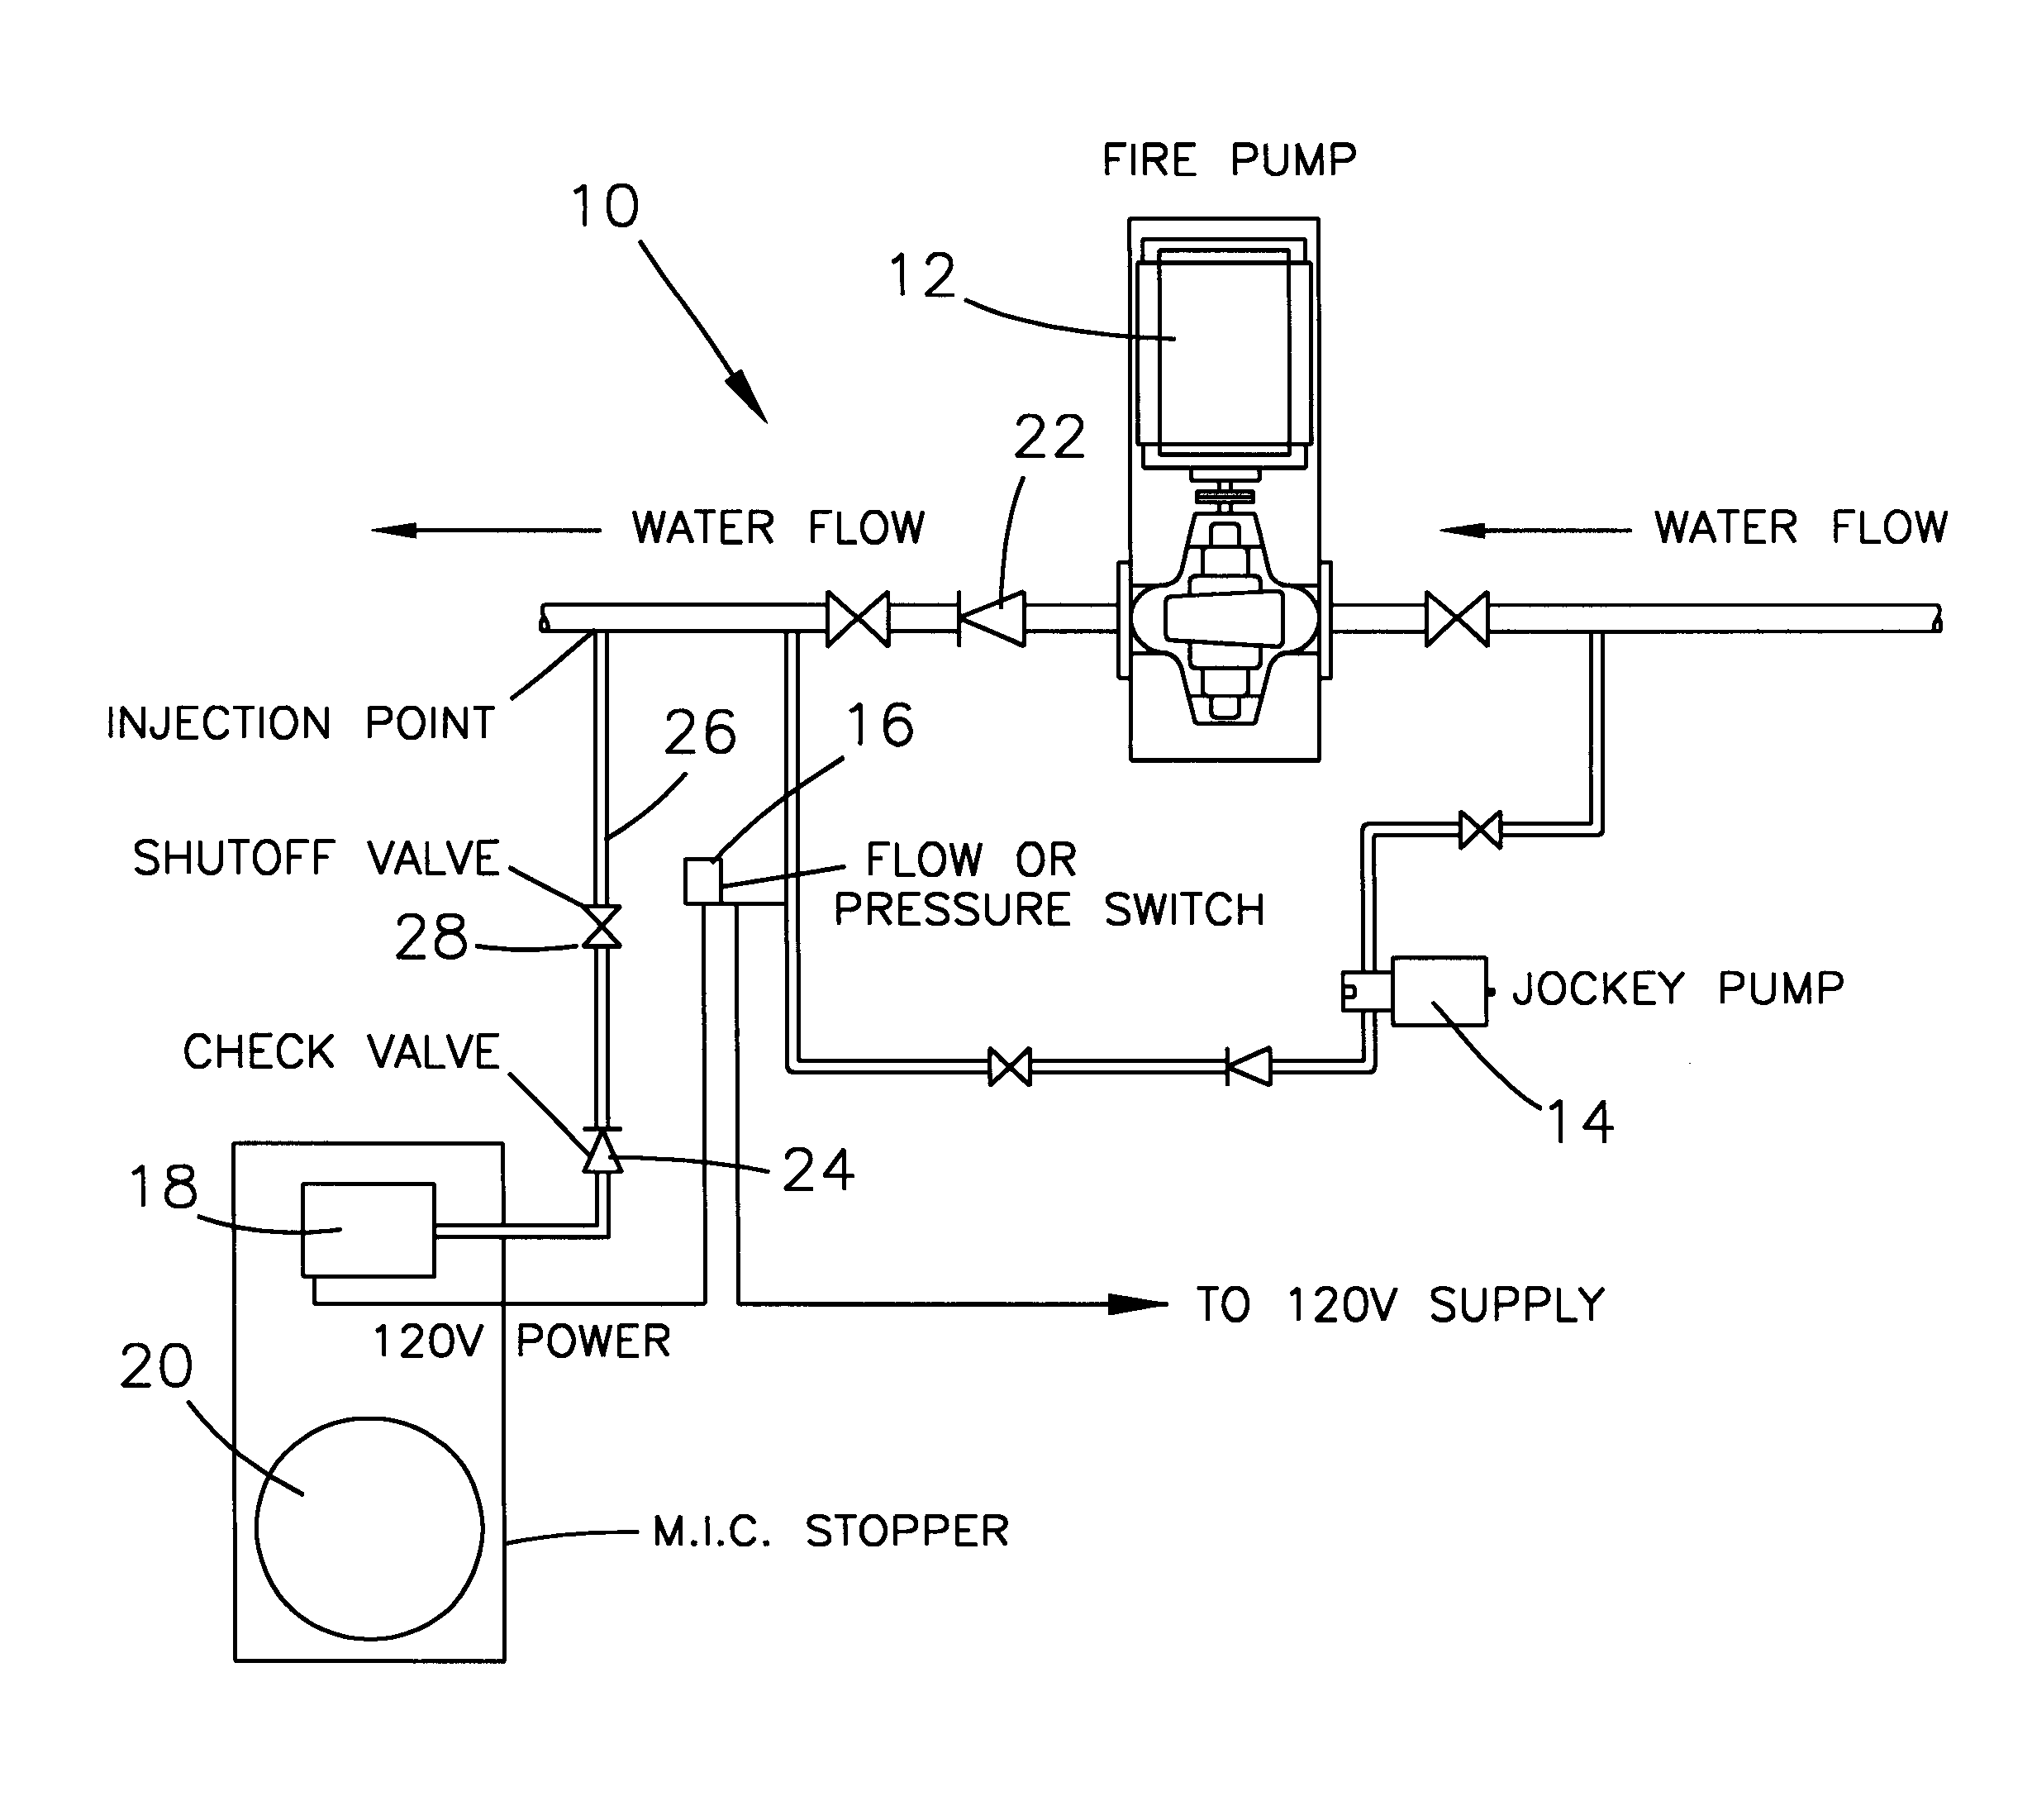 jockey pump piping diagram